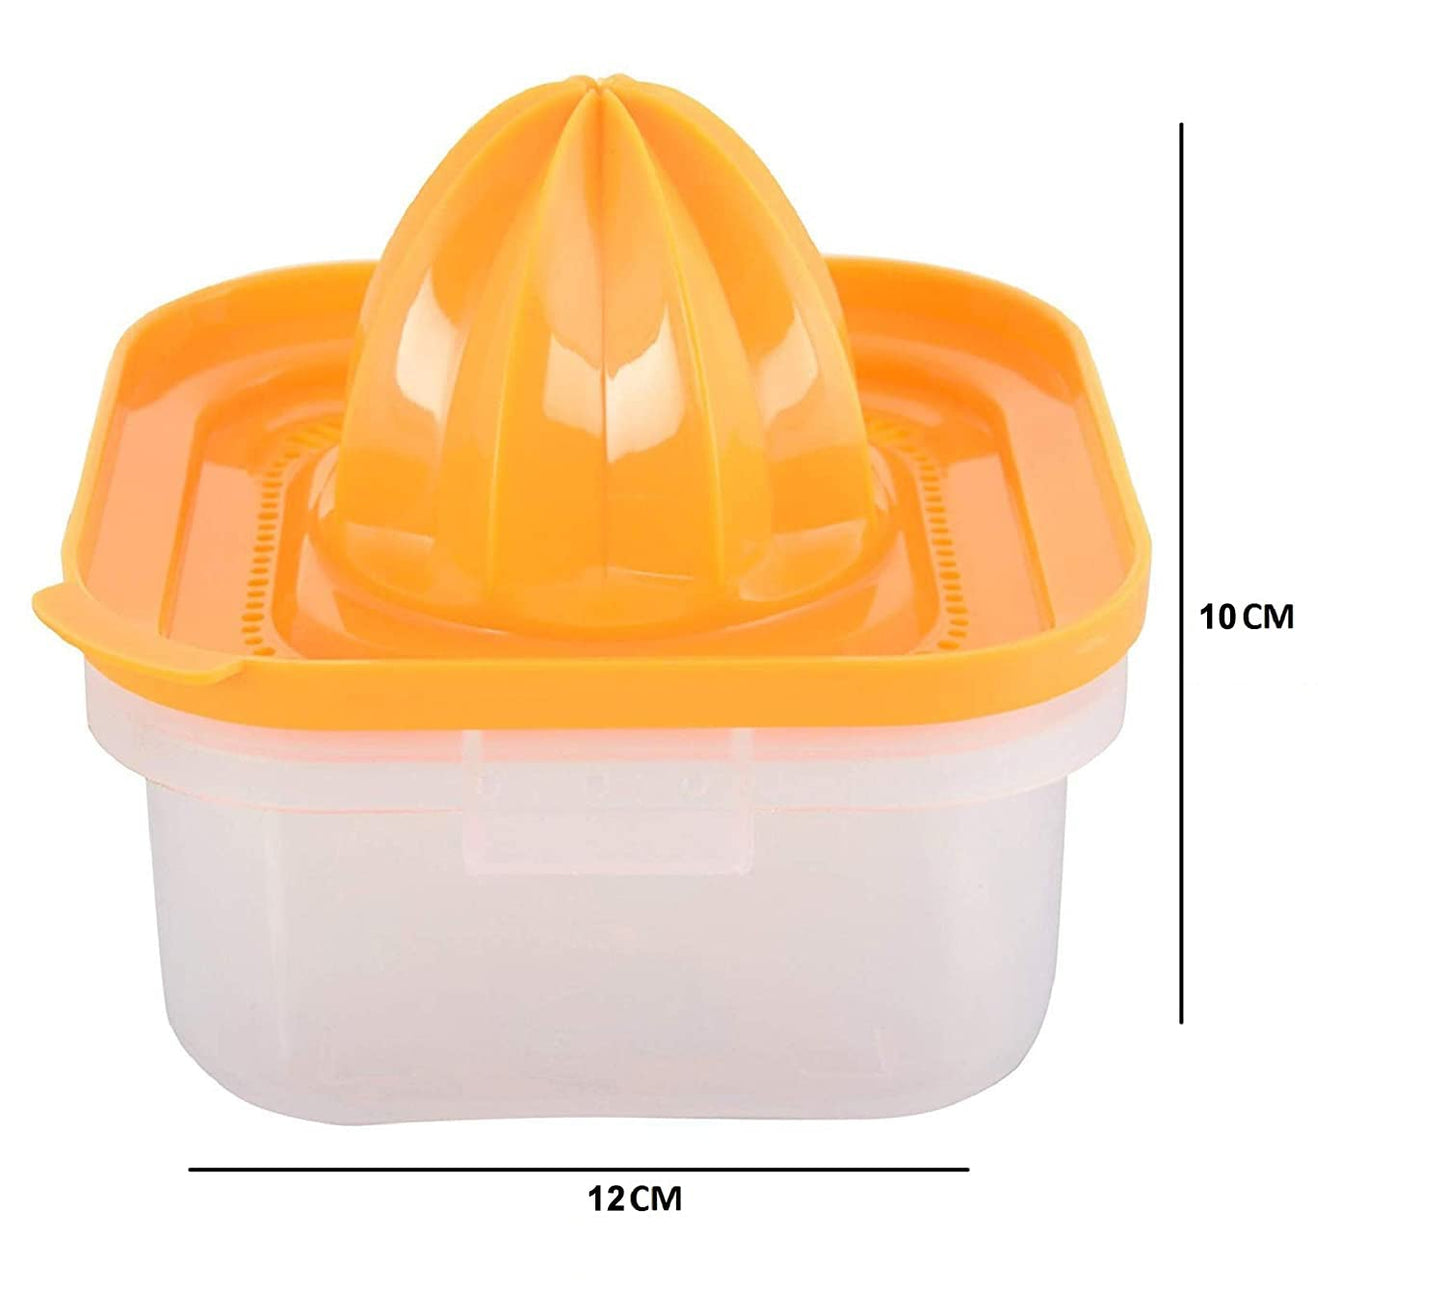 Plastic Manual Juicer for Lime Orange